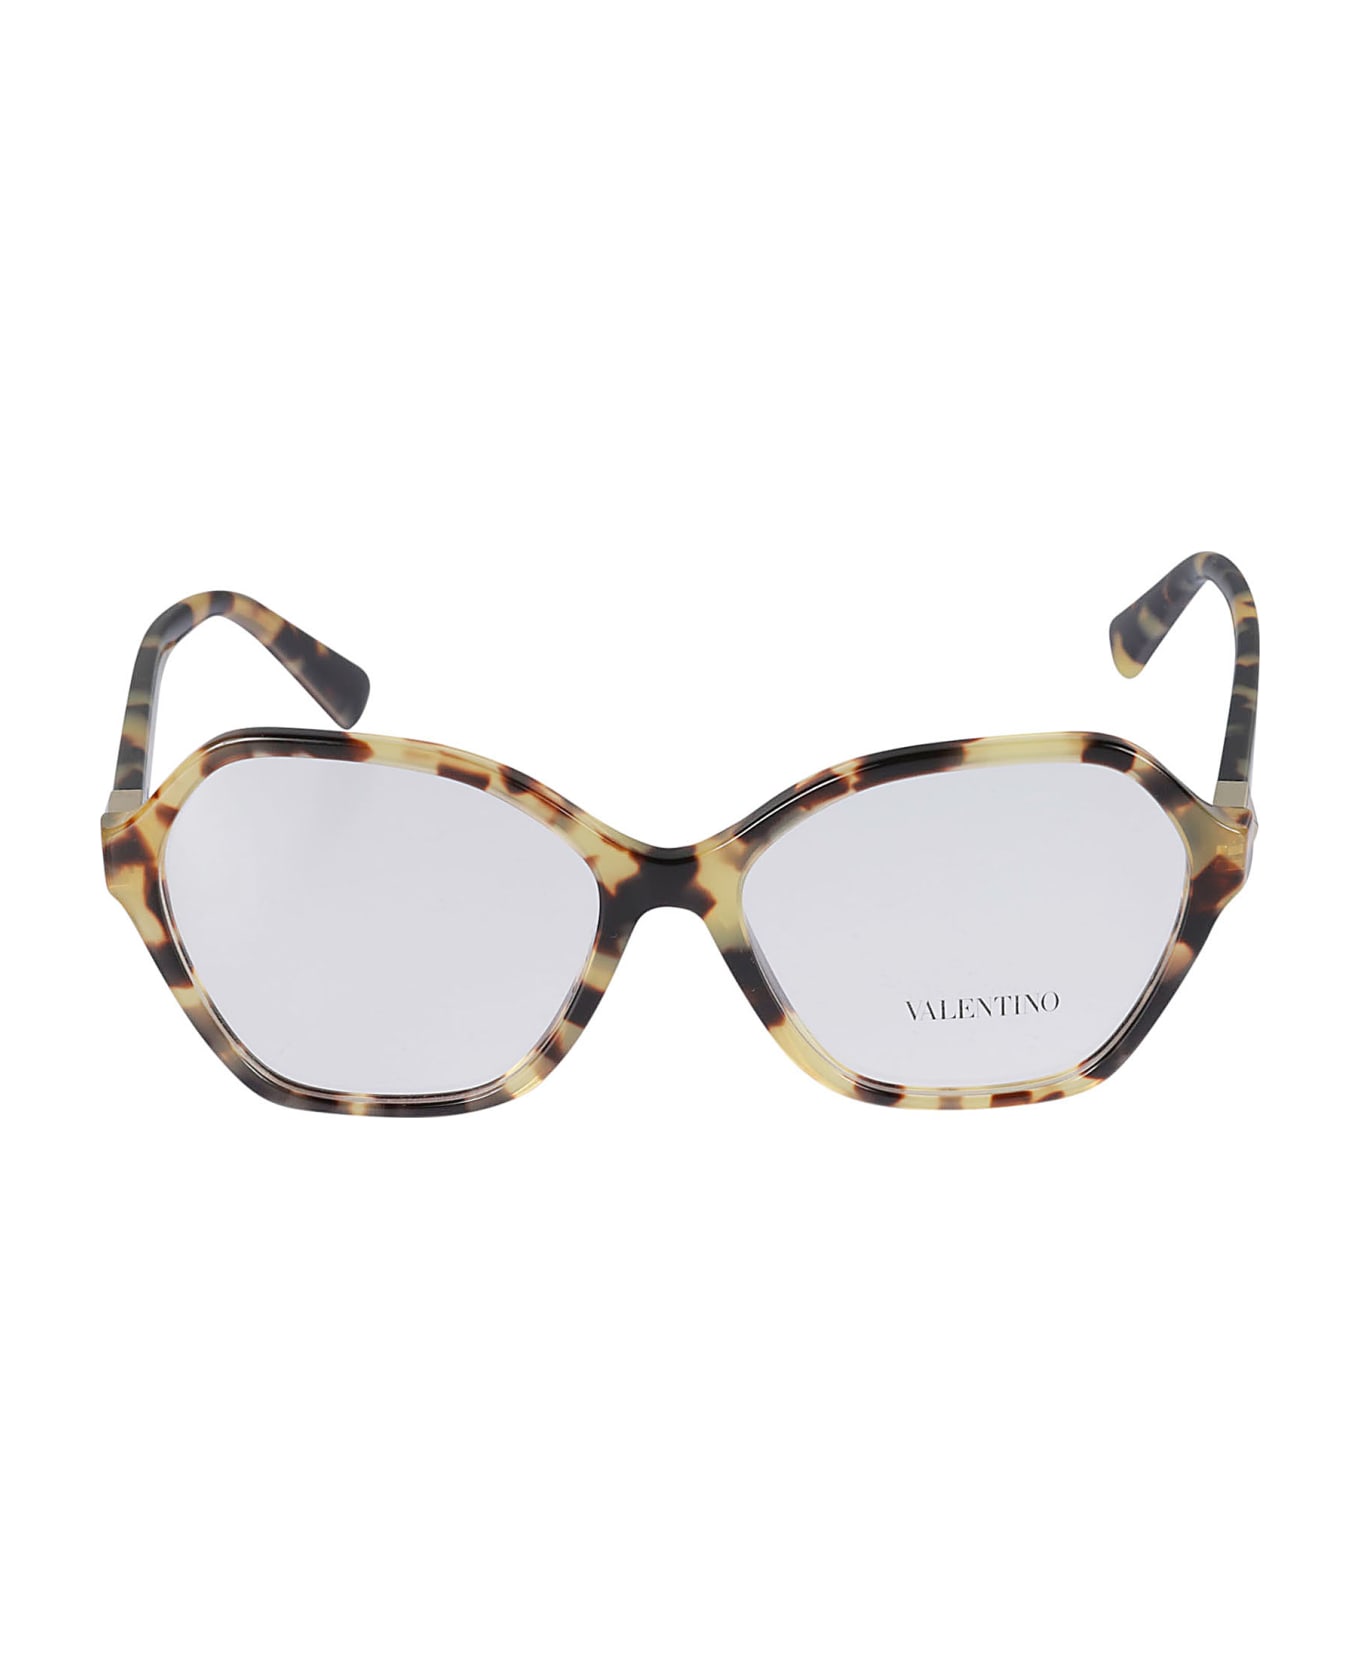 Valentino Vista5036 Glasses - Nero